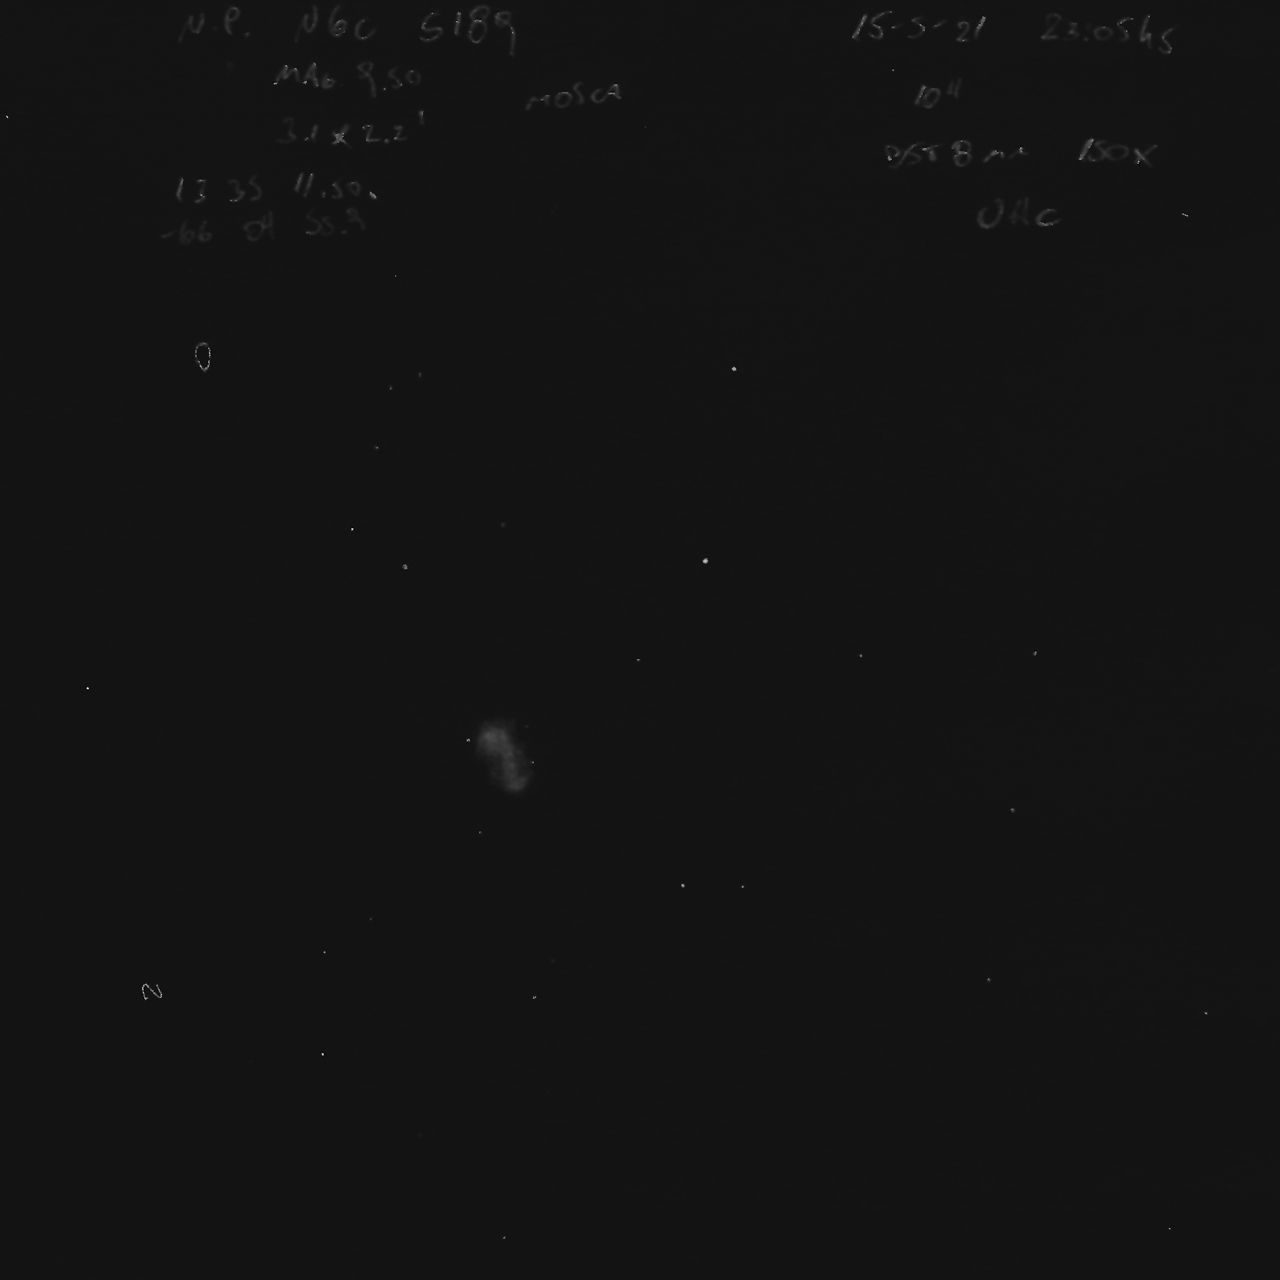 NGC5189-15-5-2021-150x-uhc-original.jpg.64bf2ff252d293069d088a801326d348.jpg